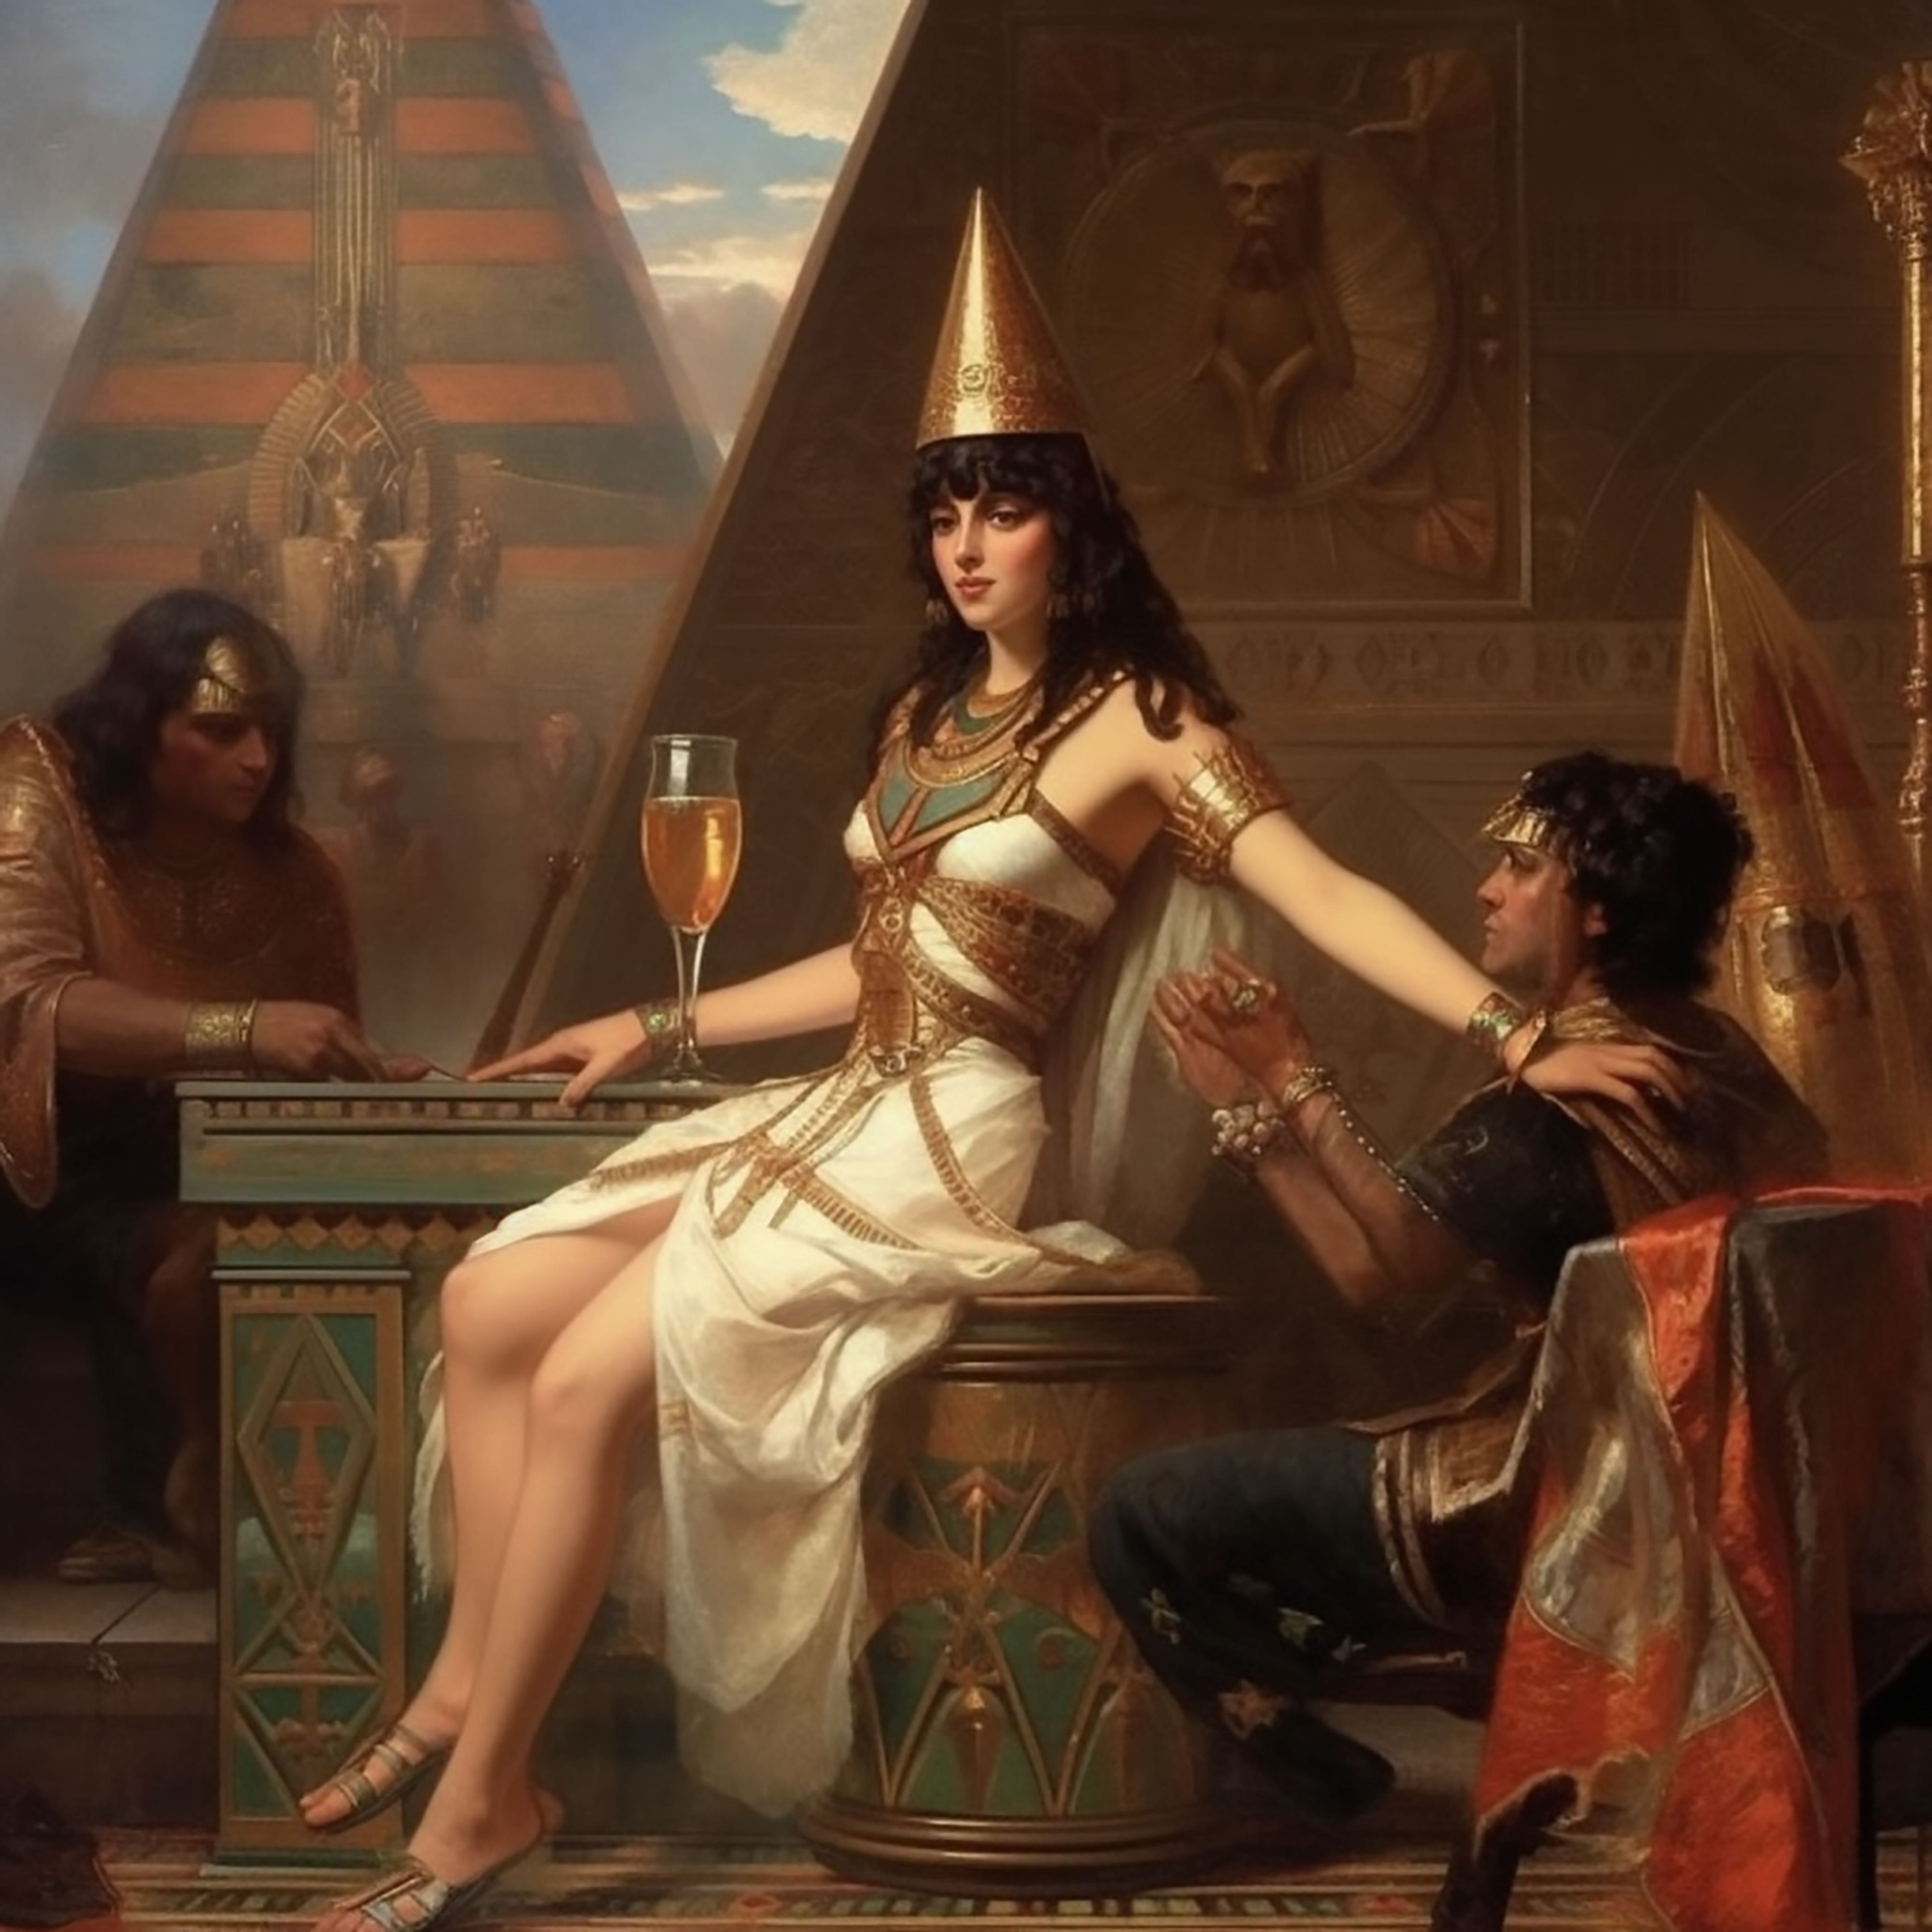 Cleopatra wird umworben oder doch nur das Kaltgetränk?